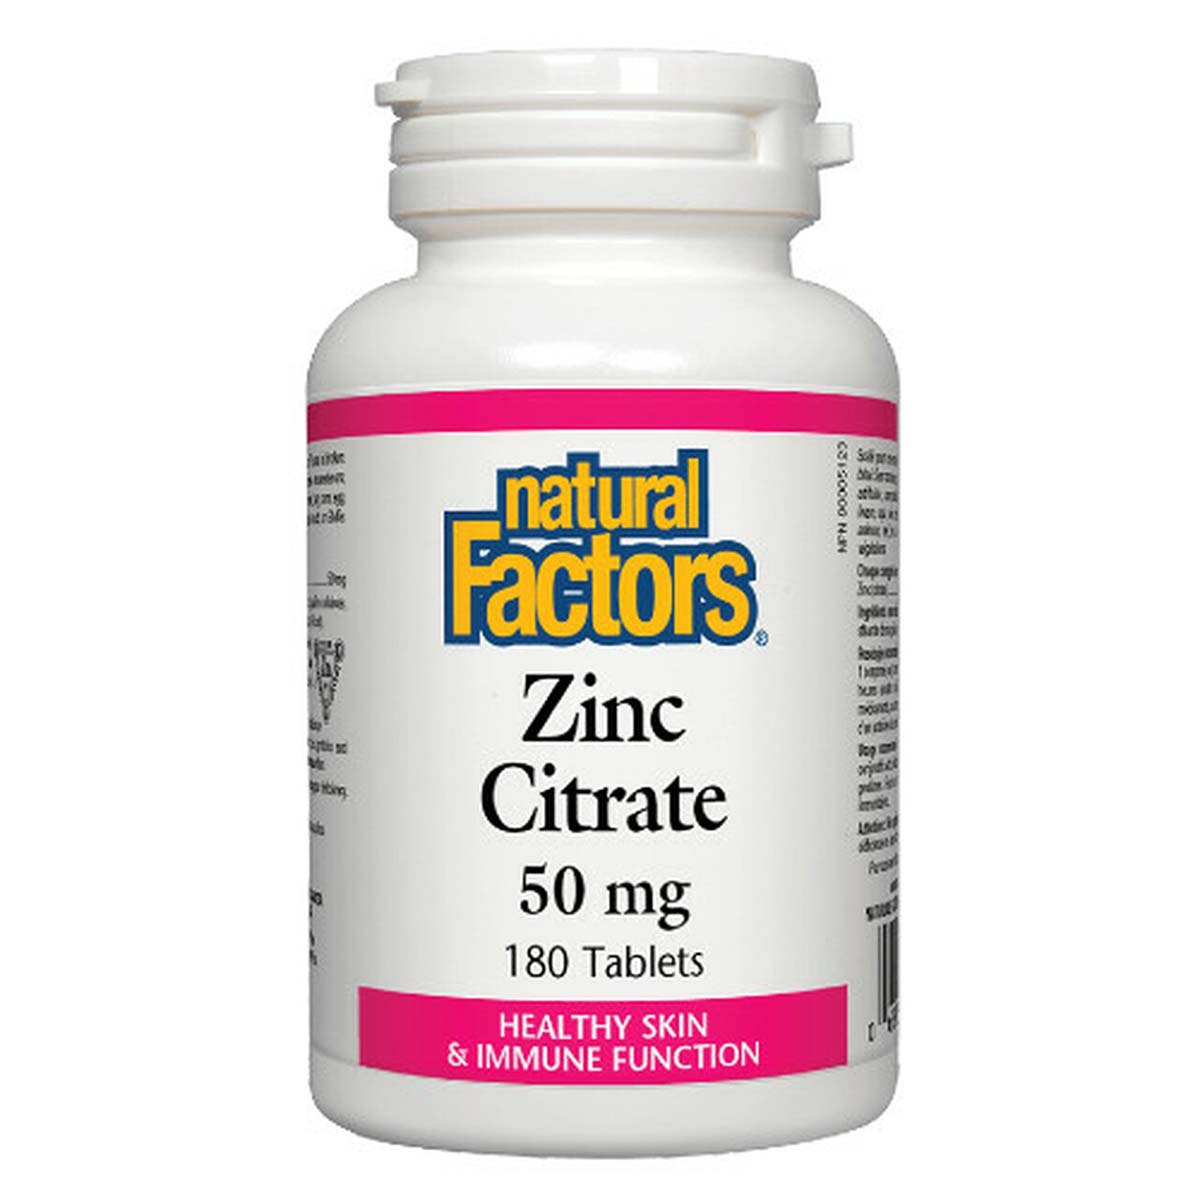 Natural Factors Zinc Citrate, 180 Tablets, 50 mg